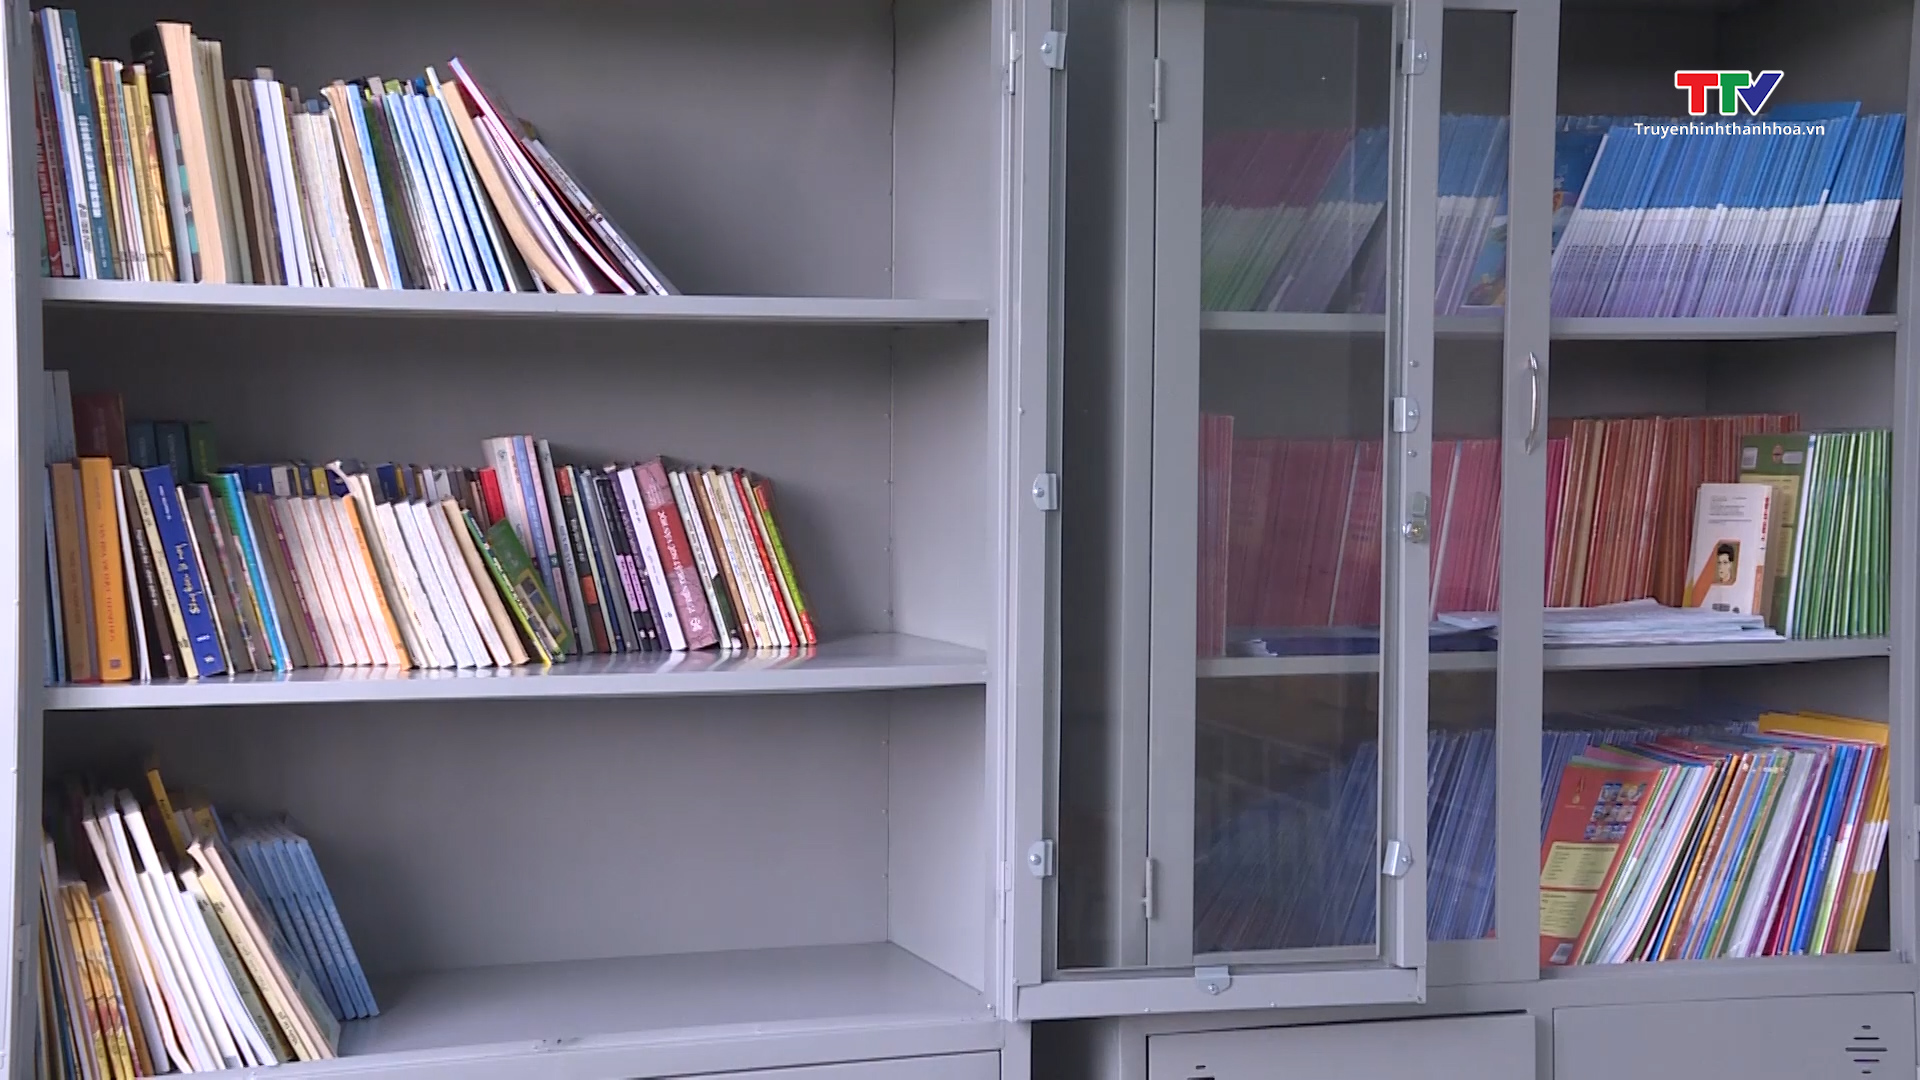 Phát triển văn hoá đọc bắt đầu từ phát triển thư viện trường học - Ảnh 3.